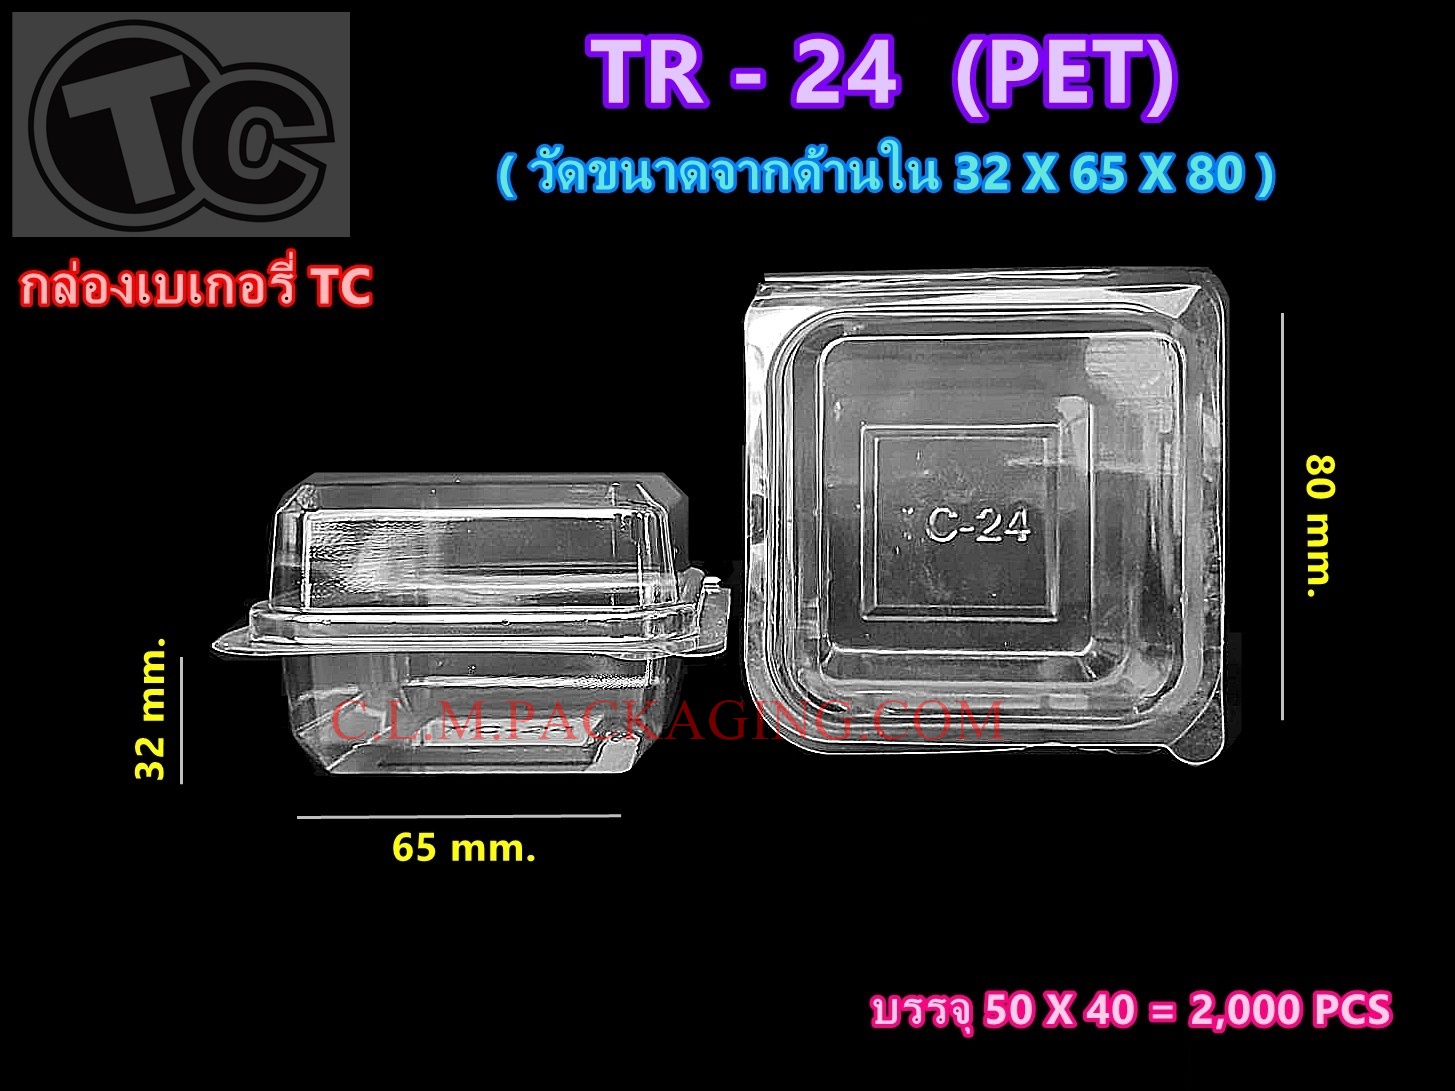 กล่องใส TR - 24 เนื้อ PET